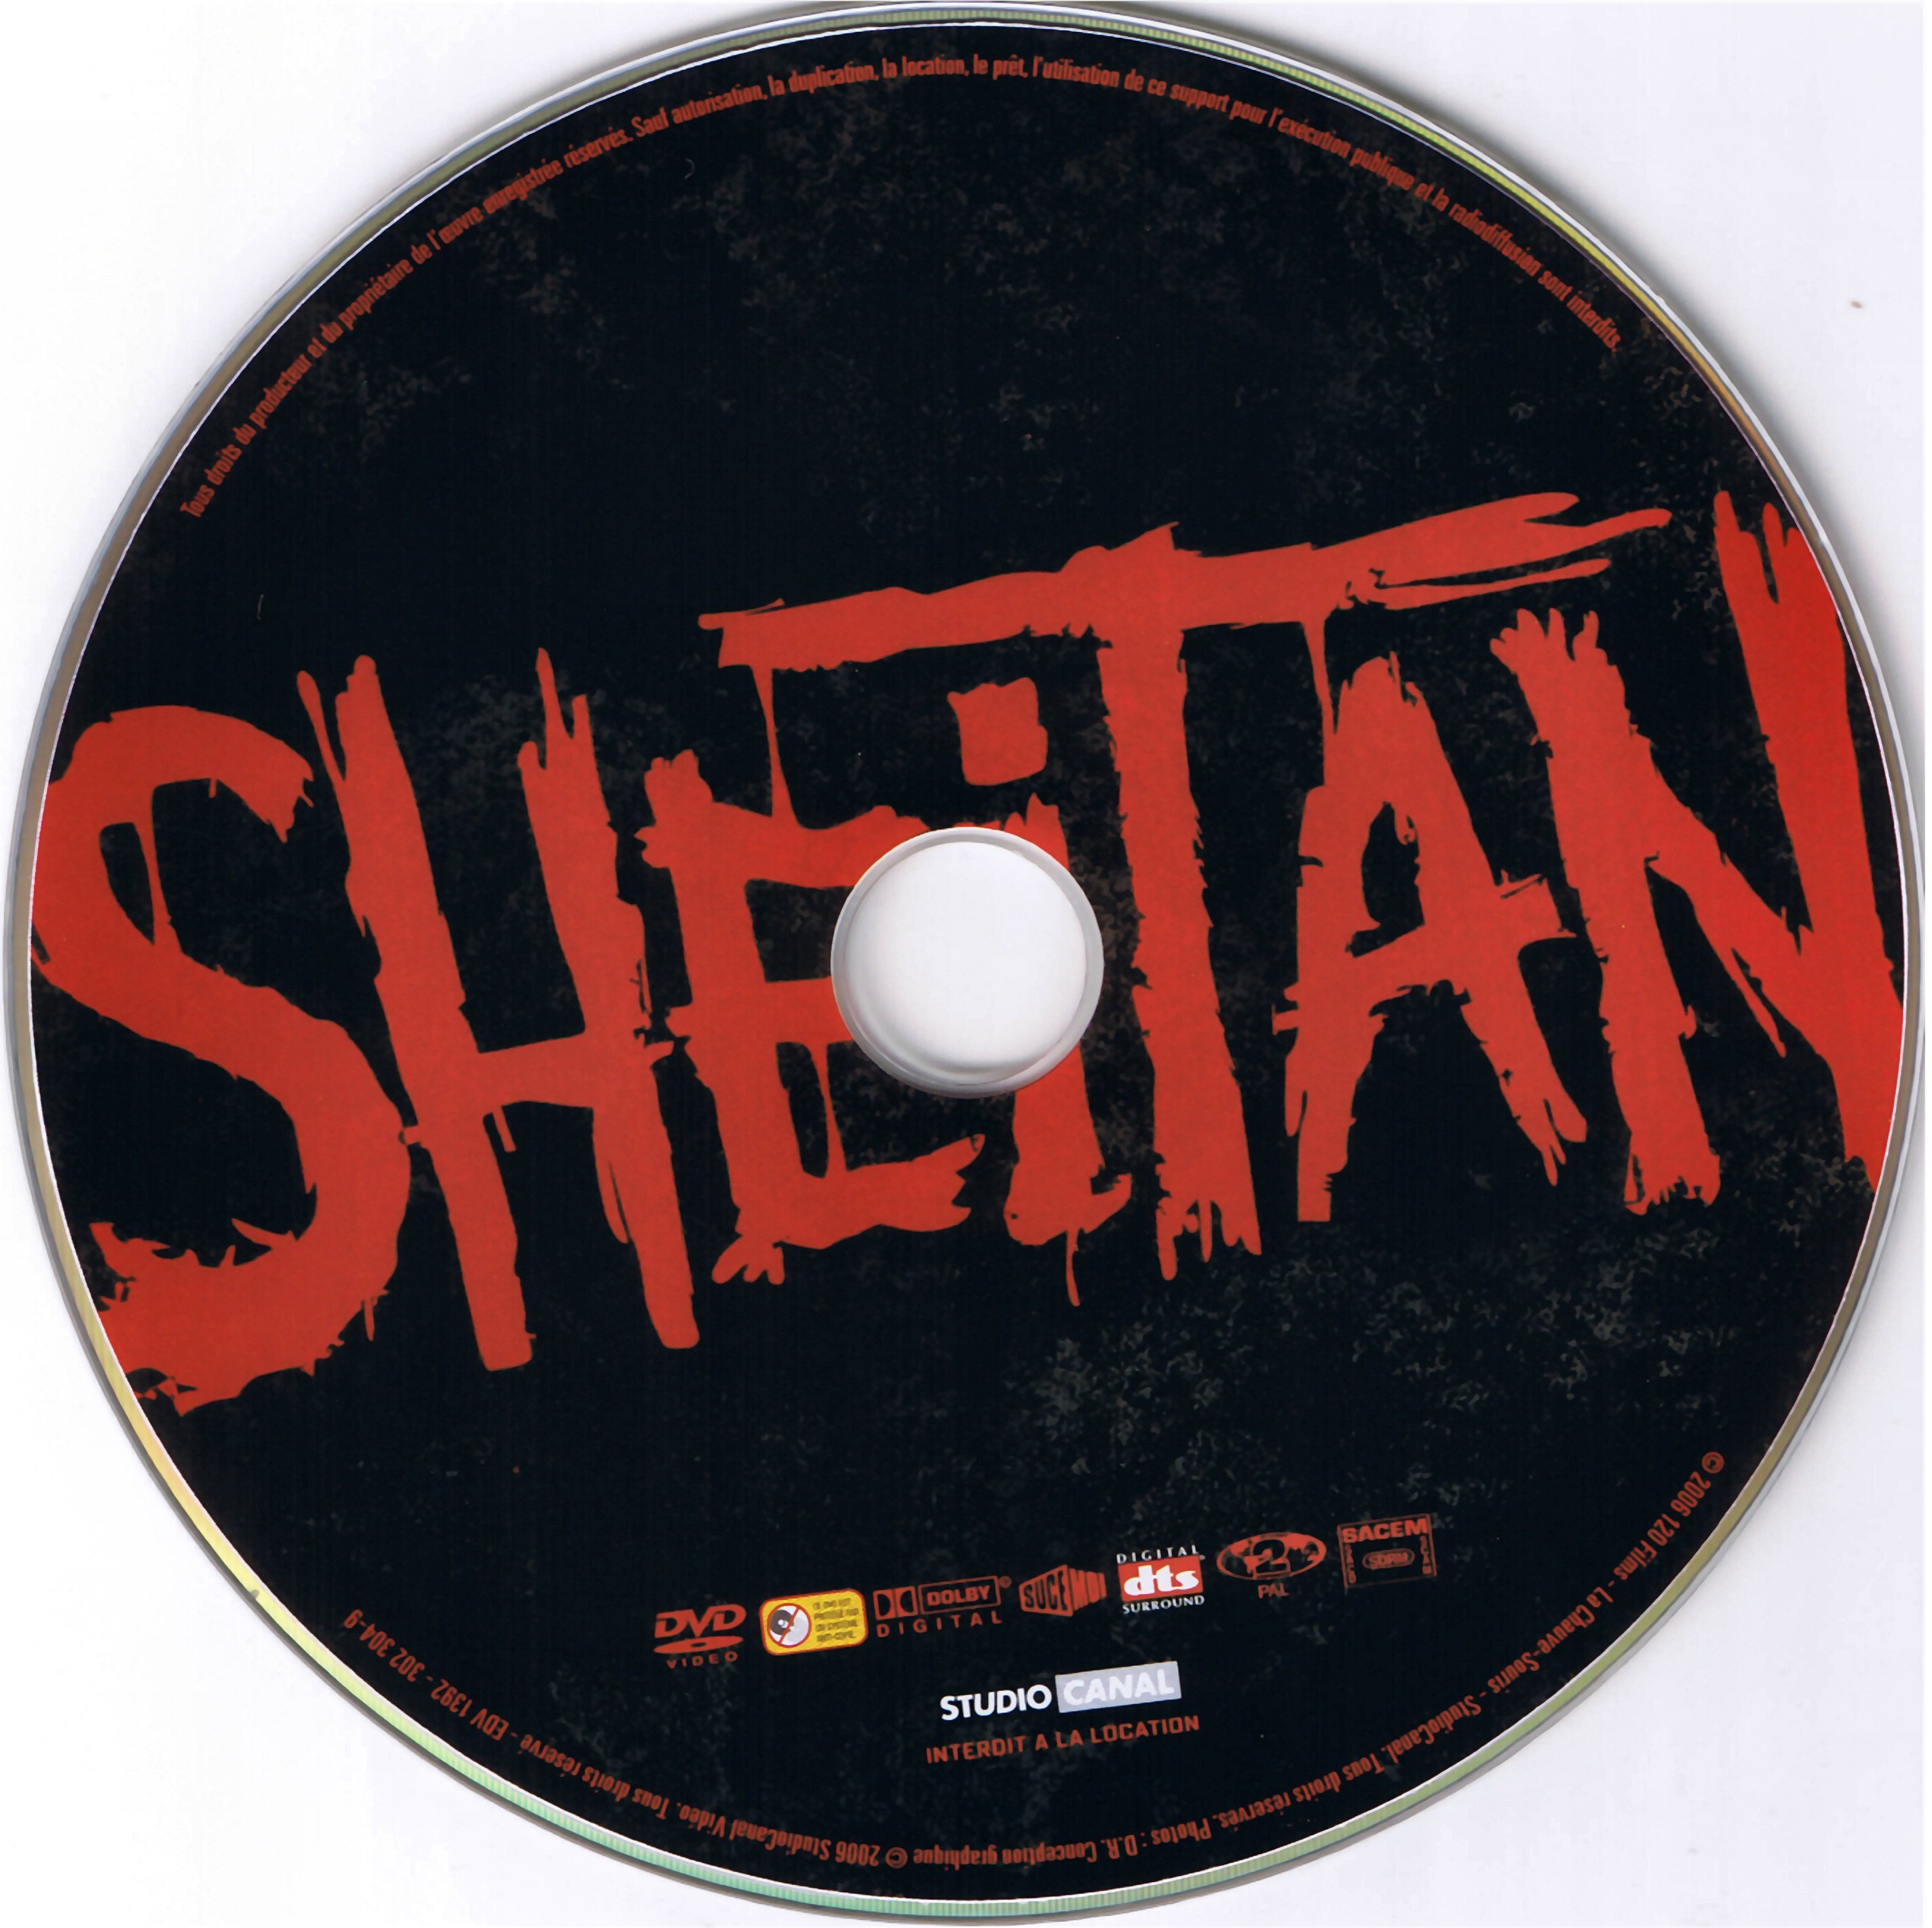 Sheitan v2